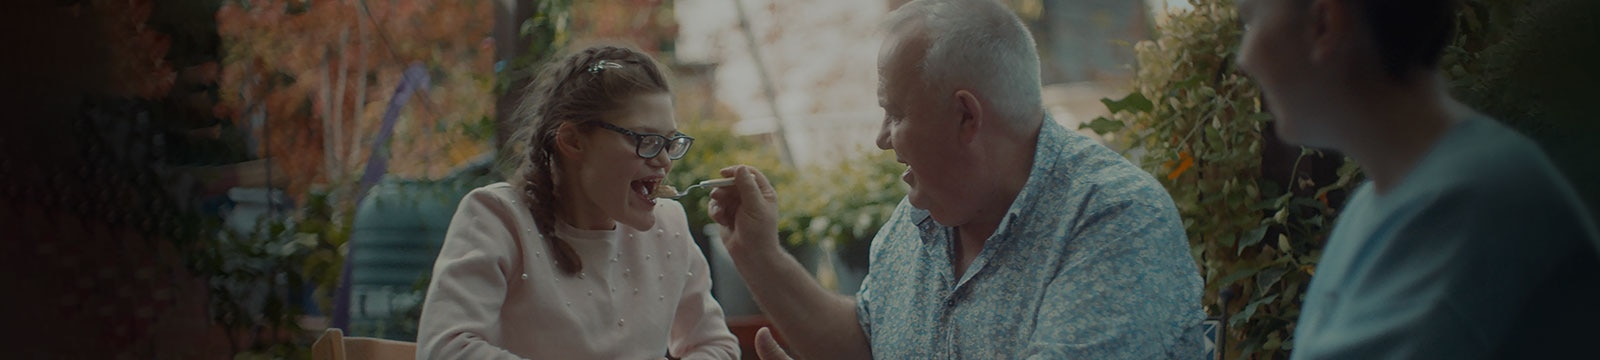 Ein lächelnder Mann füttert seine Tochter im Teenager-Alter an einem Tisch im Freien.